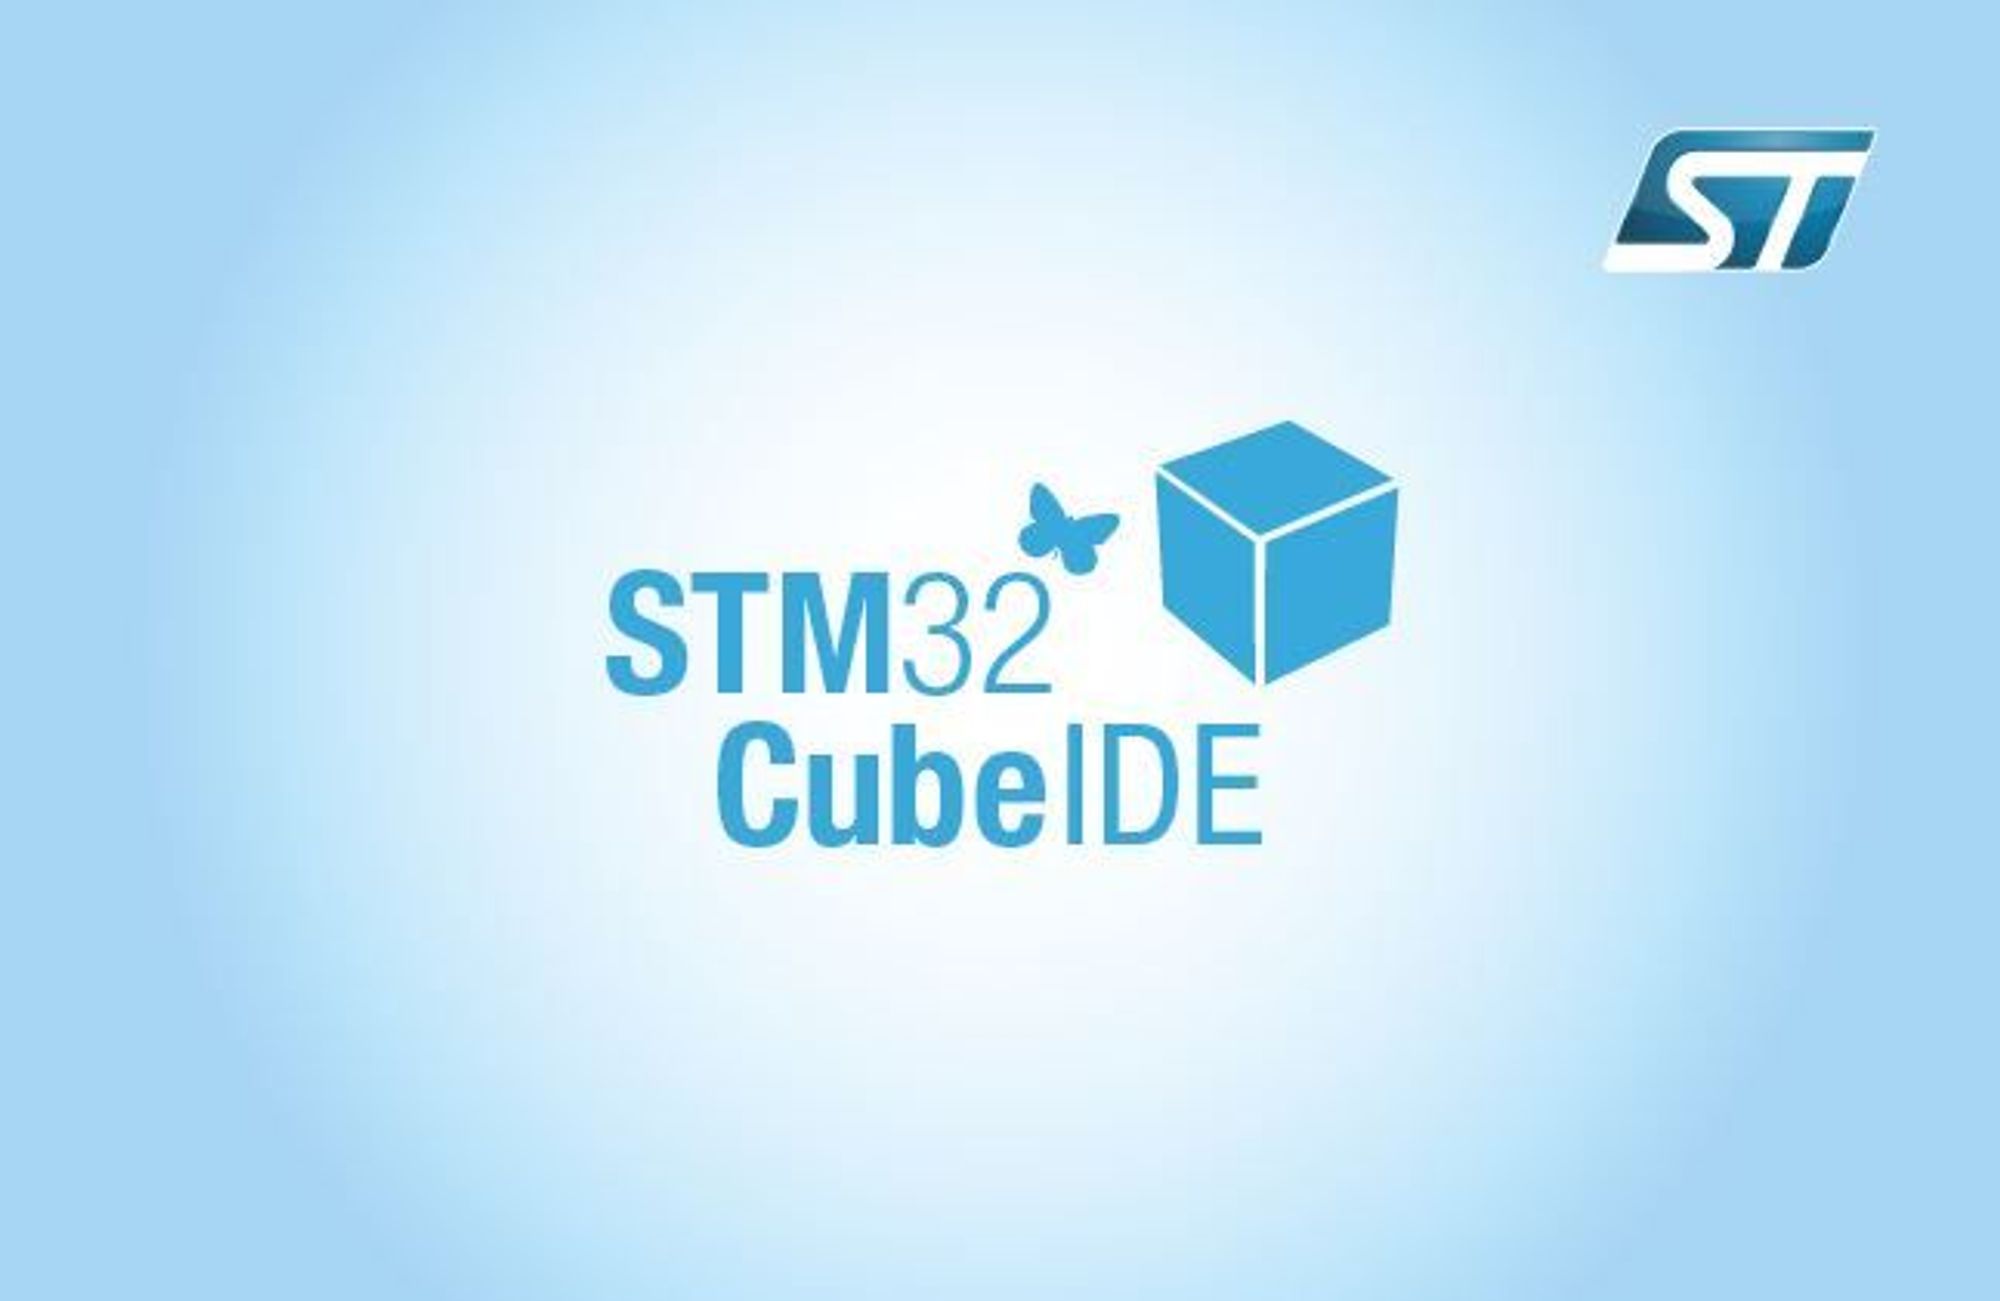 Stm32 cube mx. Stm32cubemx ide. Cube MX stm32. Stm32 Cube ide. Stm32cubeide stm32cubemx.